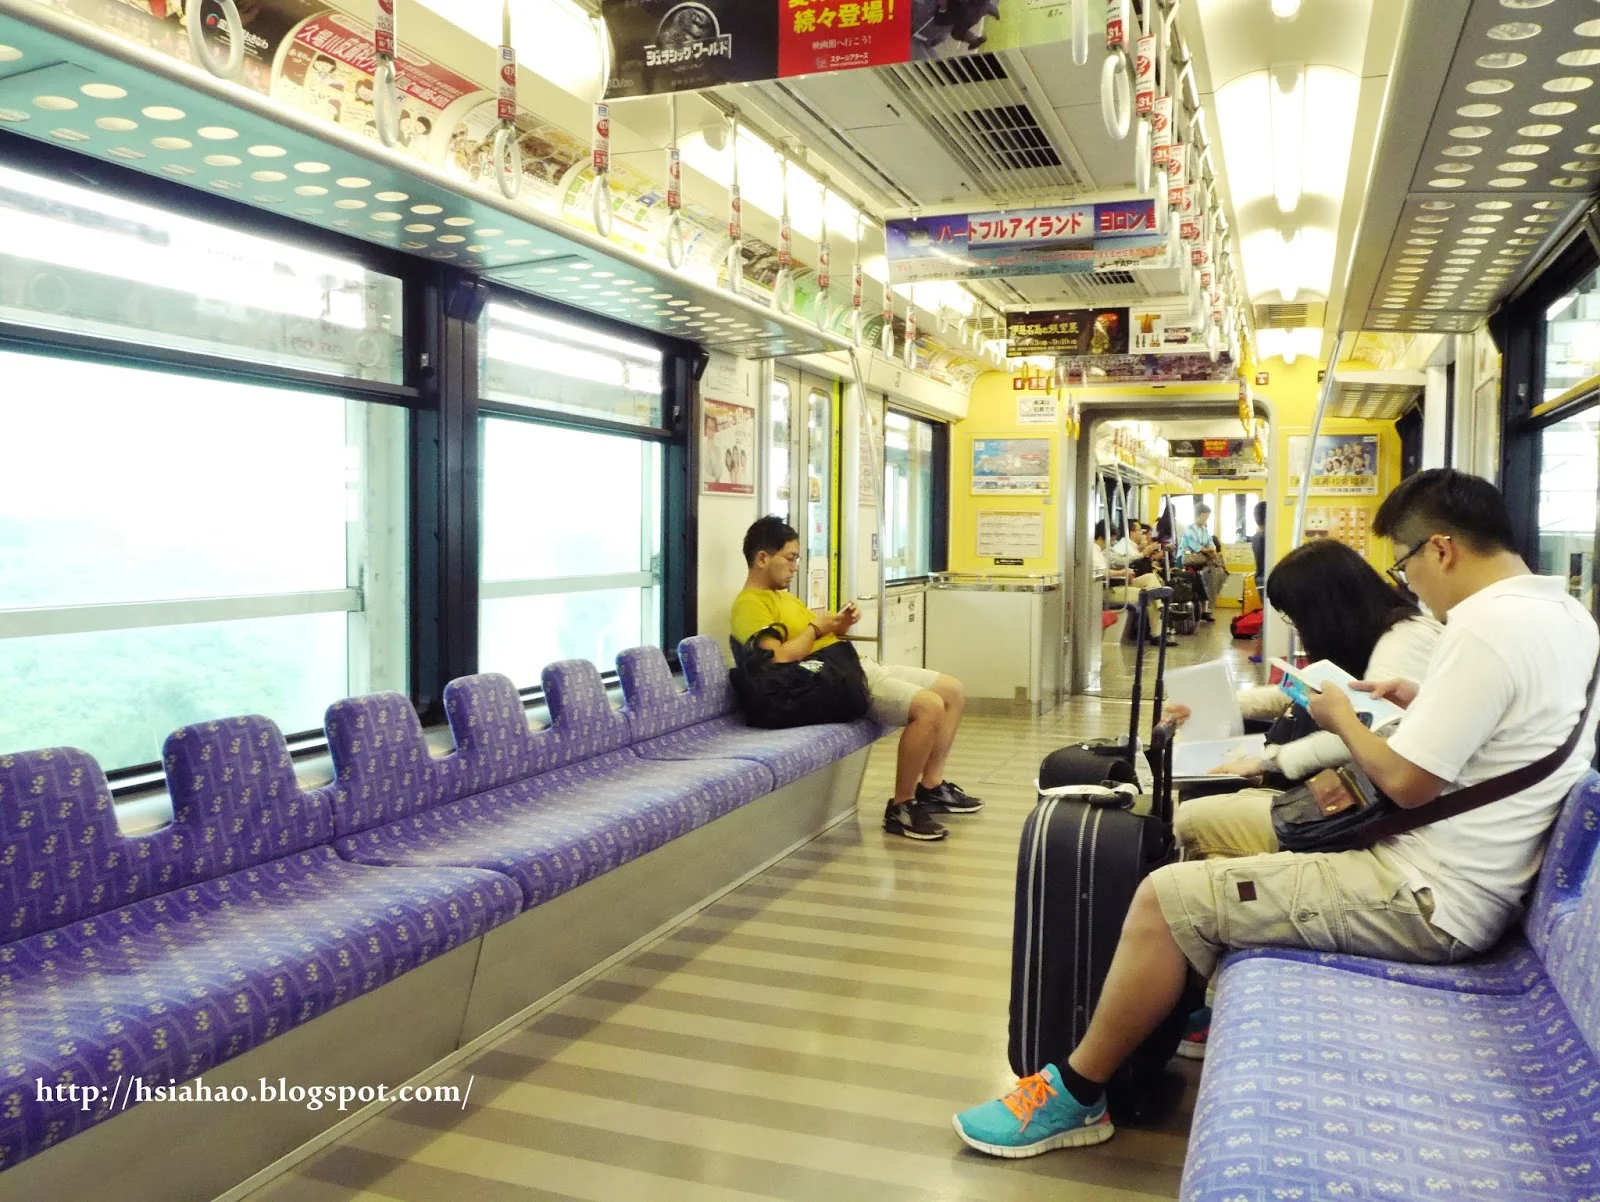 沖繩-電車交通-單軌電車-電車車廂-自由行-旅遊-旅行-Okinawa-yui-rail- transport-train